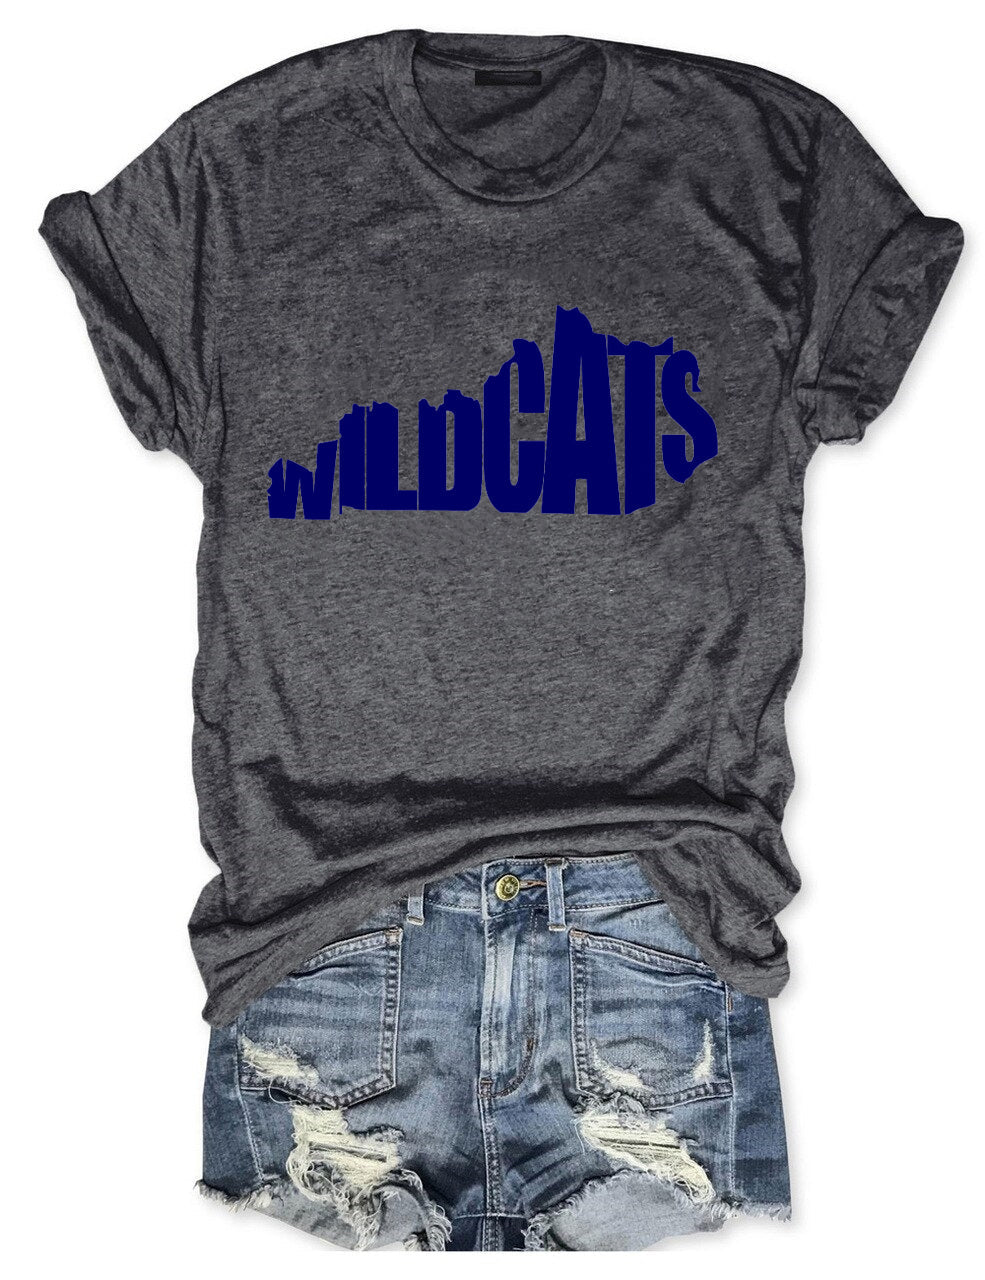 Wildcats T-Shirt